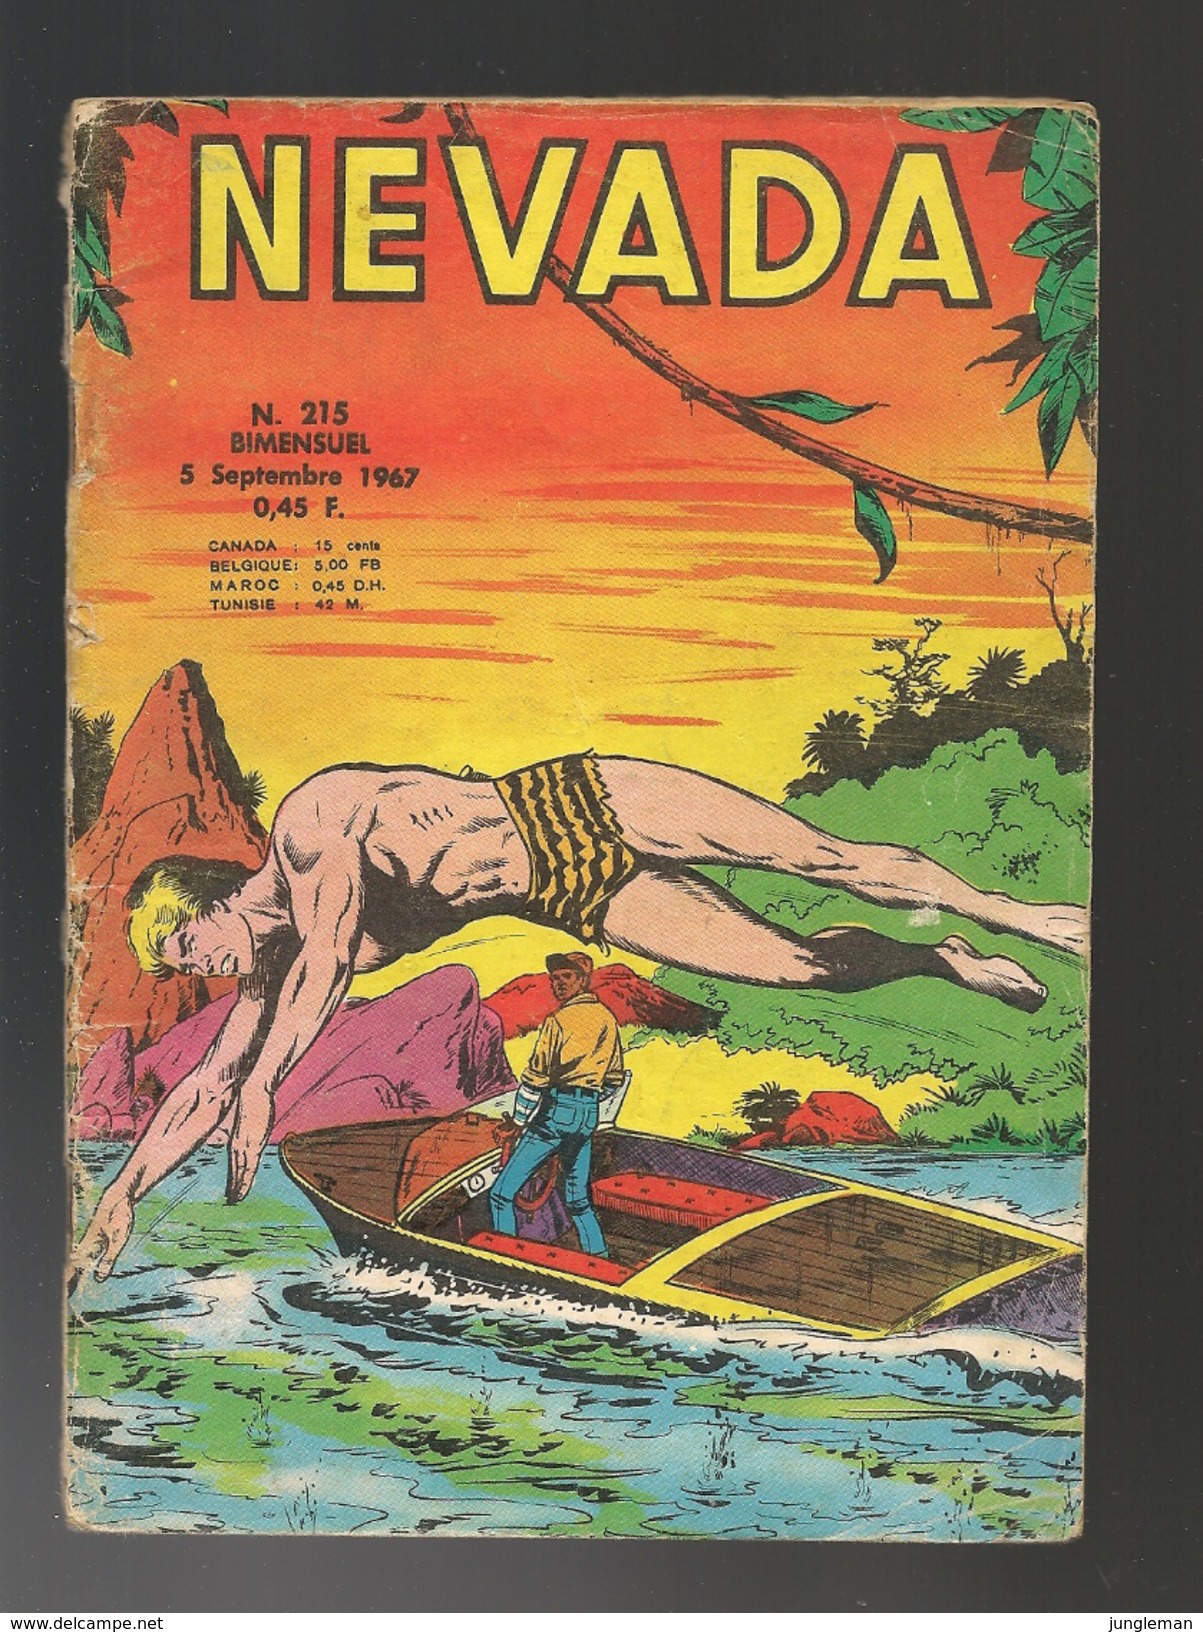 Nevada N° 215 - Editions LUG à Lyon - Septembre 1967 - Avec Miki Le Ranger Et Tanka Le Fils De La Jungle - BE - Nevada